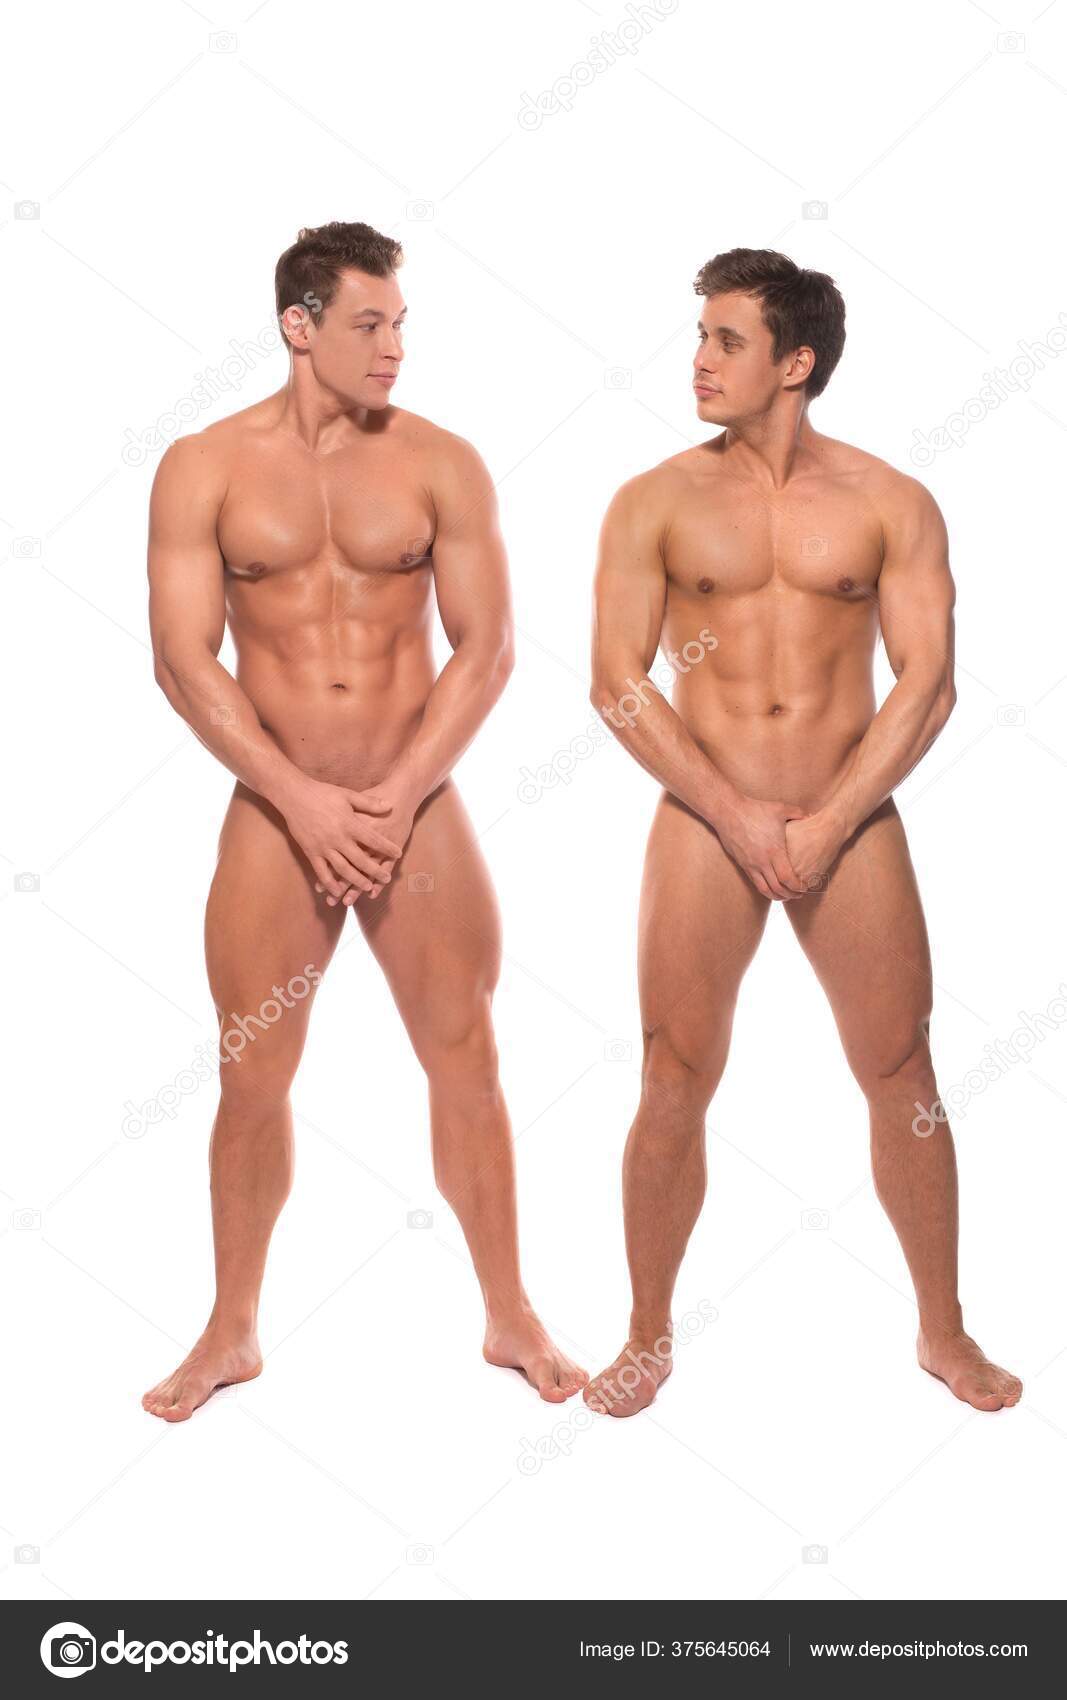 Jaime Binde Porn Pix Men Full Nude